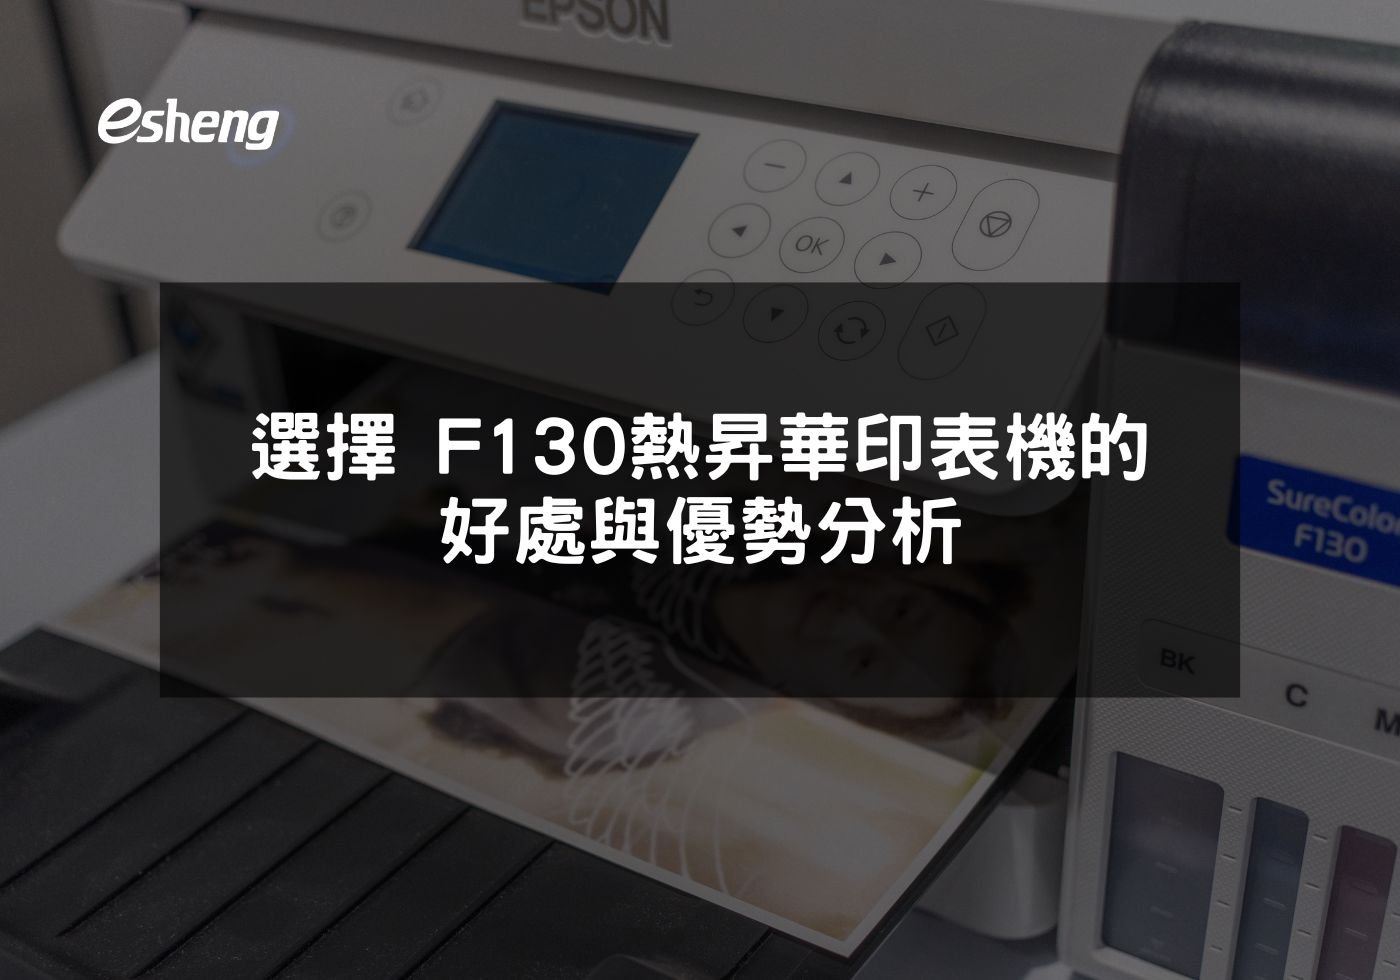 閱讀更多文章 選擇EPSON F130熱昇華印表機的好處與優勢分析